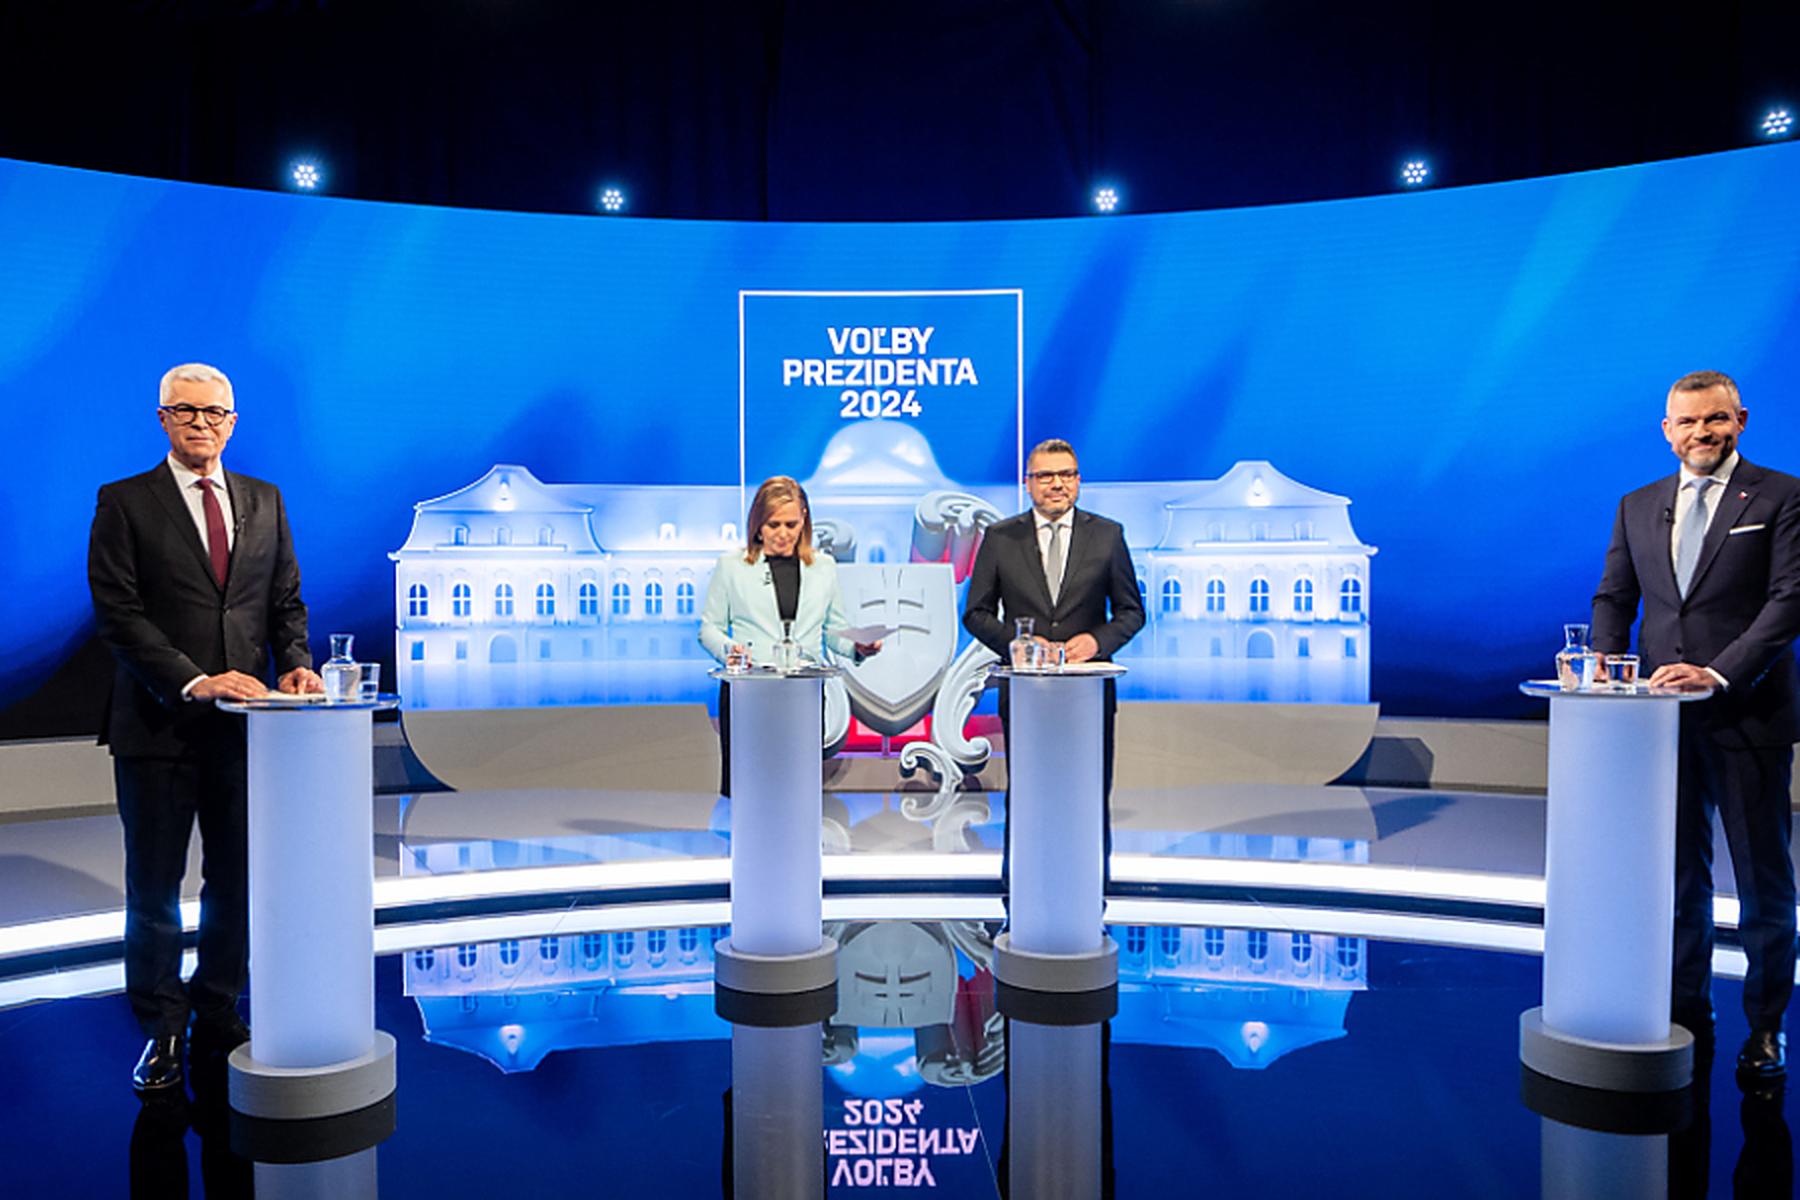 Bratislava: Stichwahl um das Präsidentenamt in der Slowakei